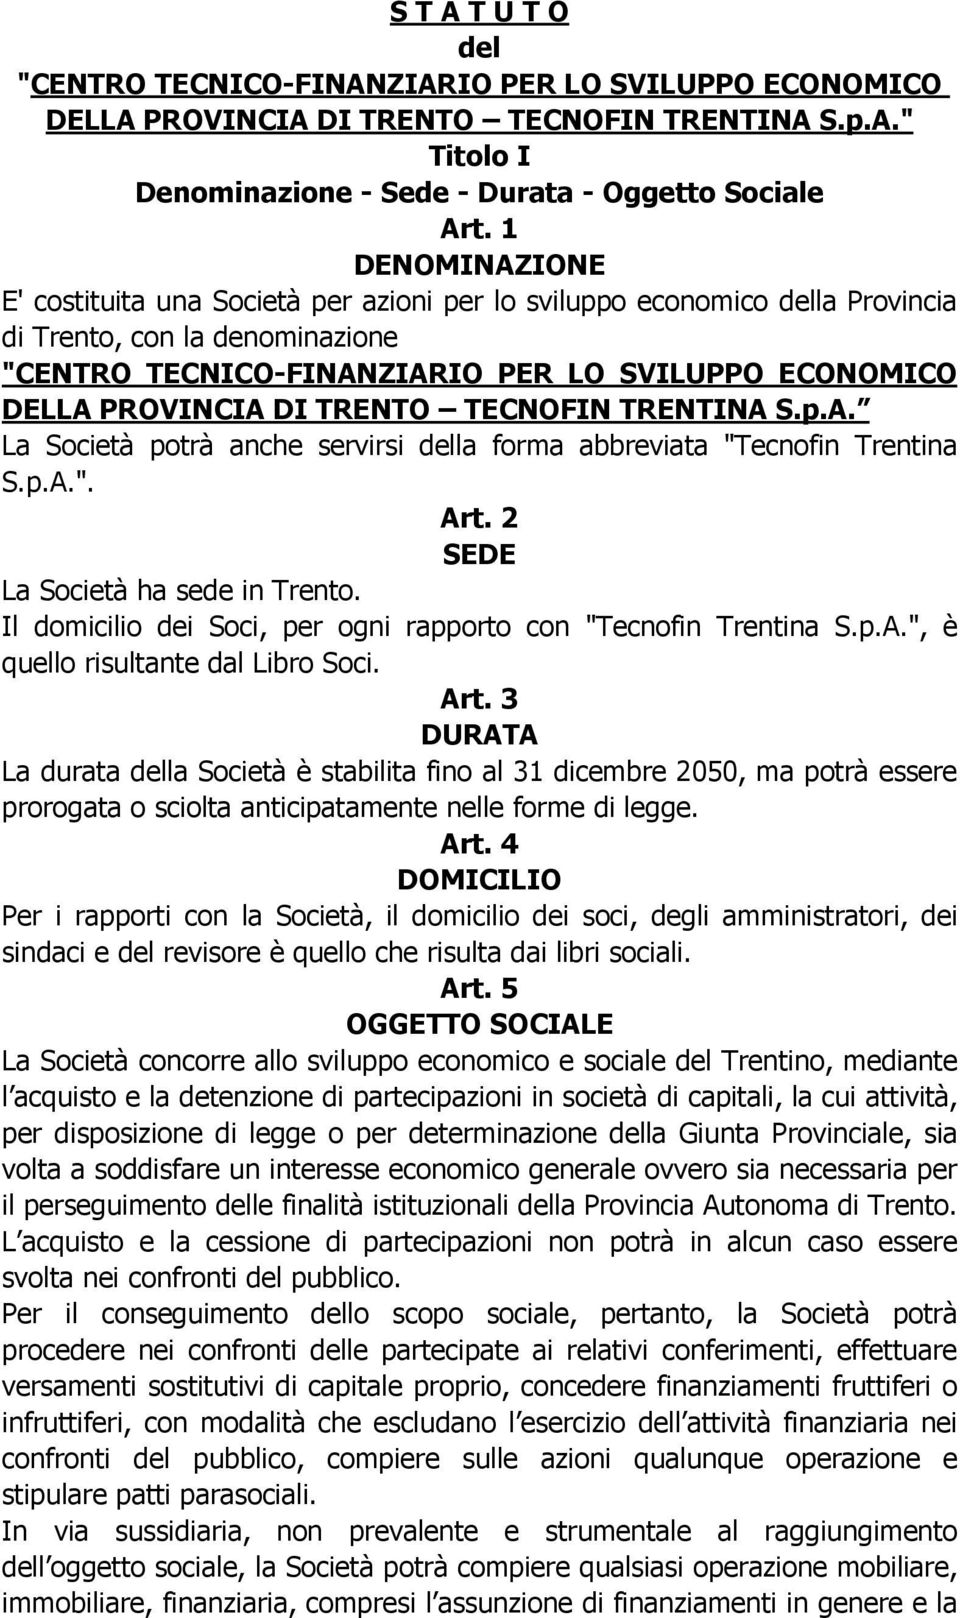 TRENTO TECNOFIN TRENTINA S.p.A. La Società potrà anche servirsi della forma abbreviata "Tecnofin Trentina S.p.A.". Art. 2 SEDE La Società ha sede in Trento.